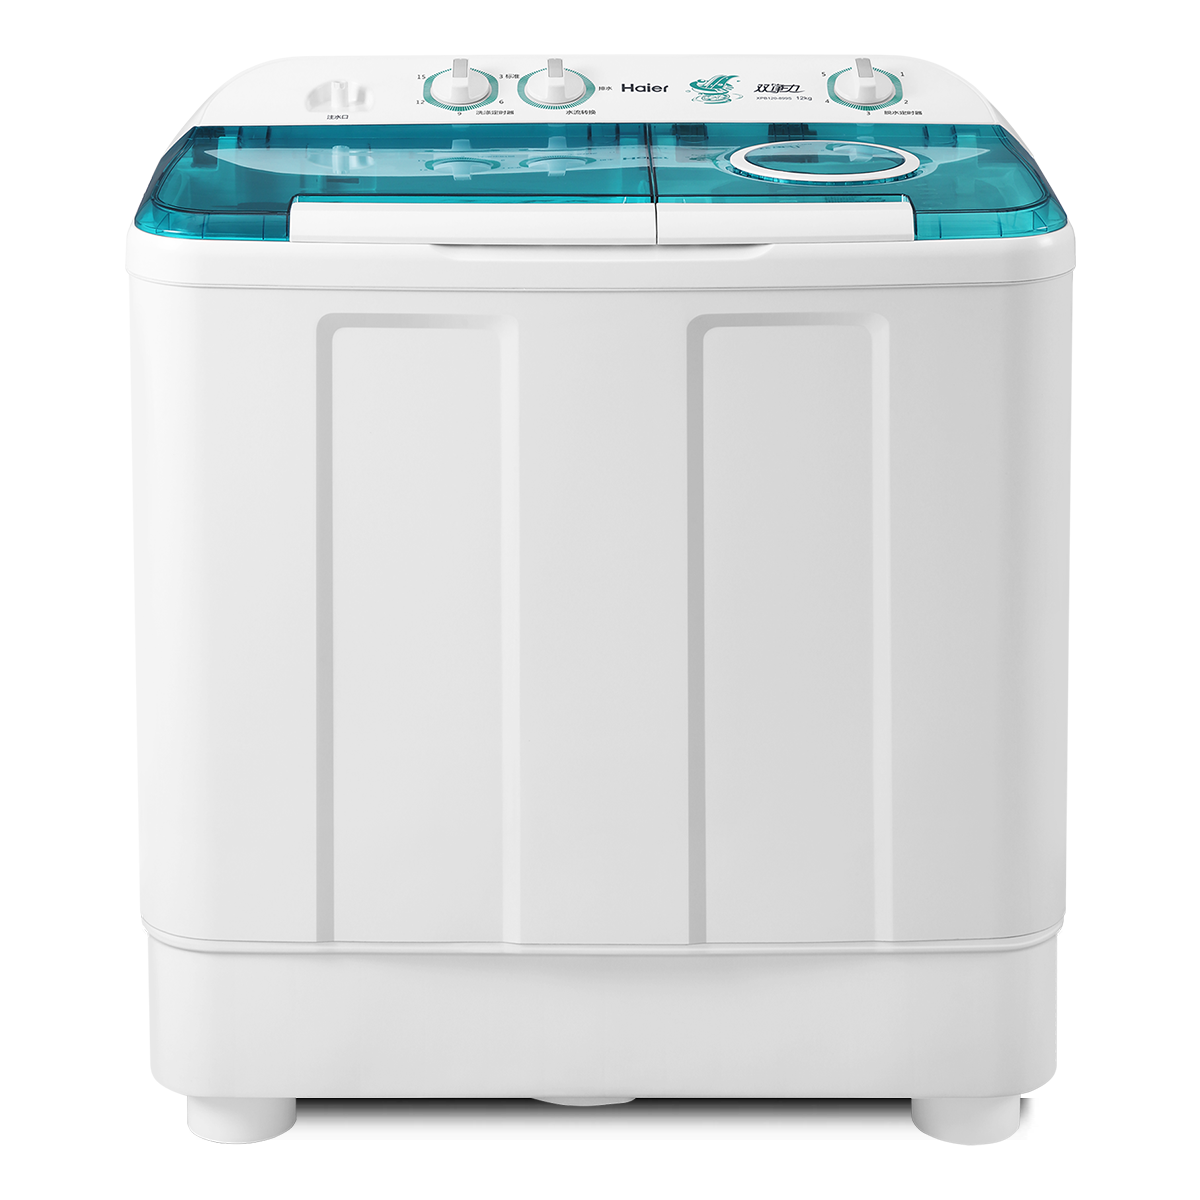 海尔Haier洗衣机 XPB120-899S 说明书